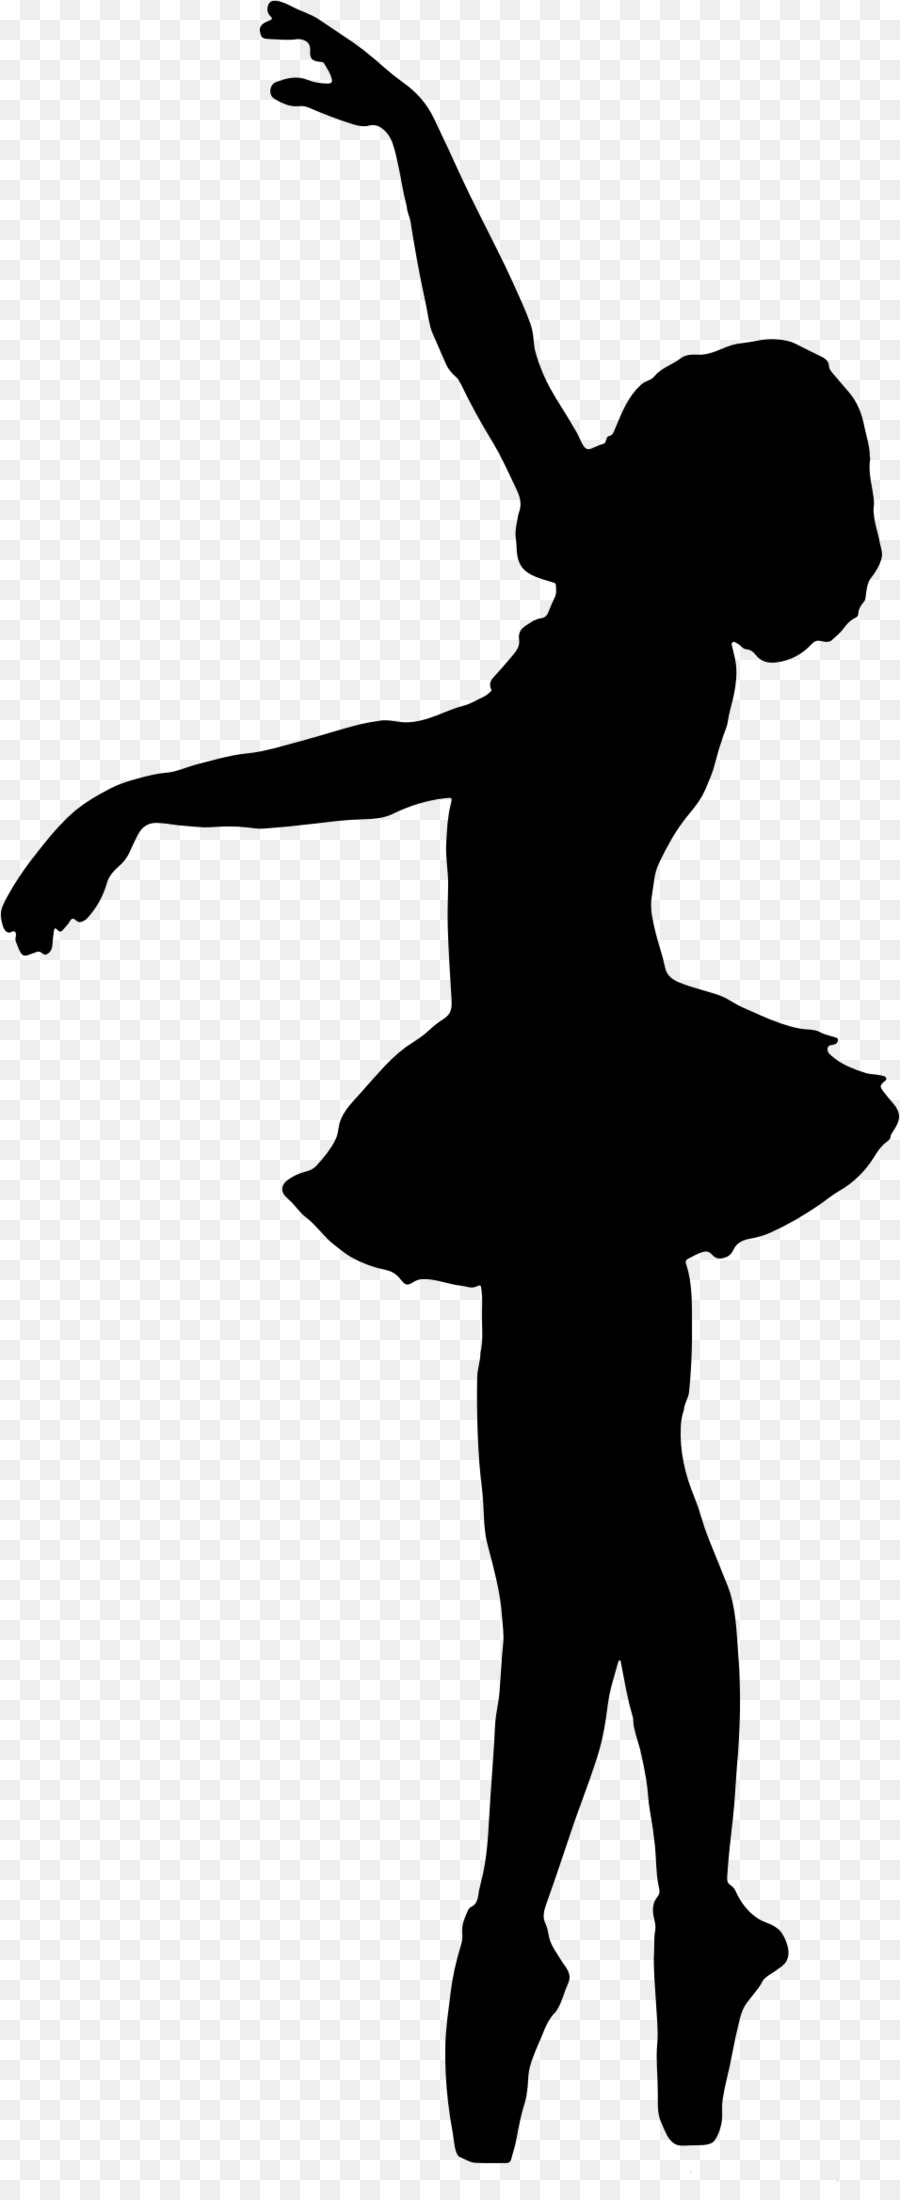 Ballet Dancer Silhouette - ballet png download - 956*2318 - Free Transparent  png Download.